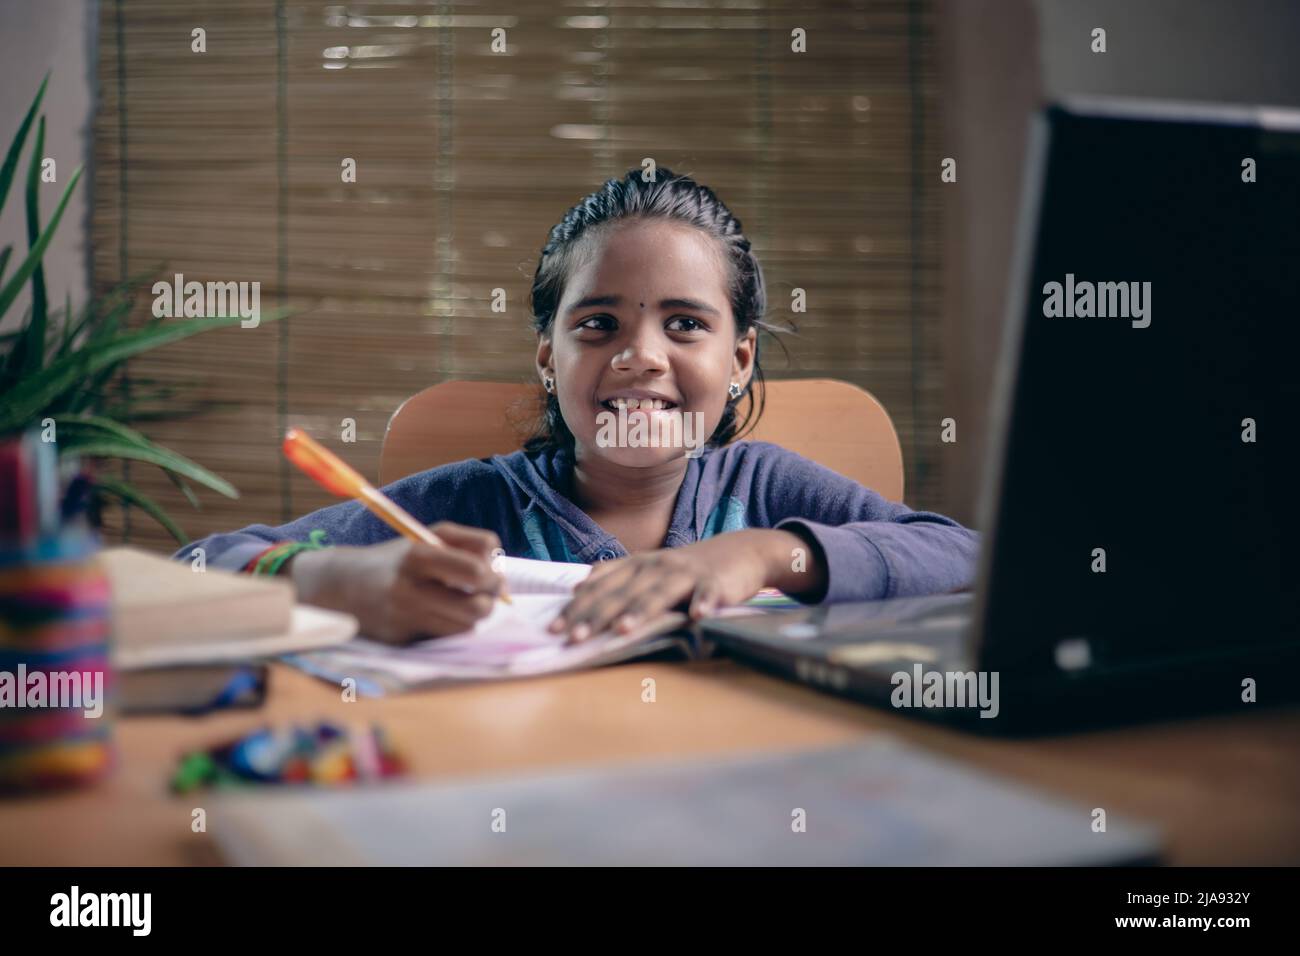 Indian Girl Estudiando clase en línea - covid 19. Niña asiática de 10-12 años. Foto de stock